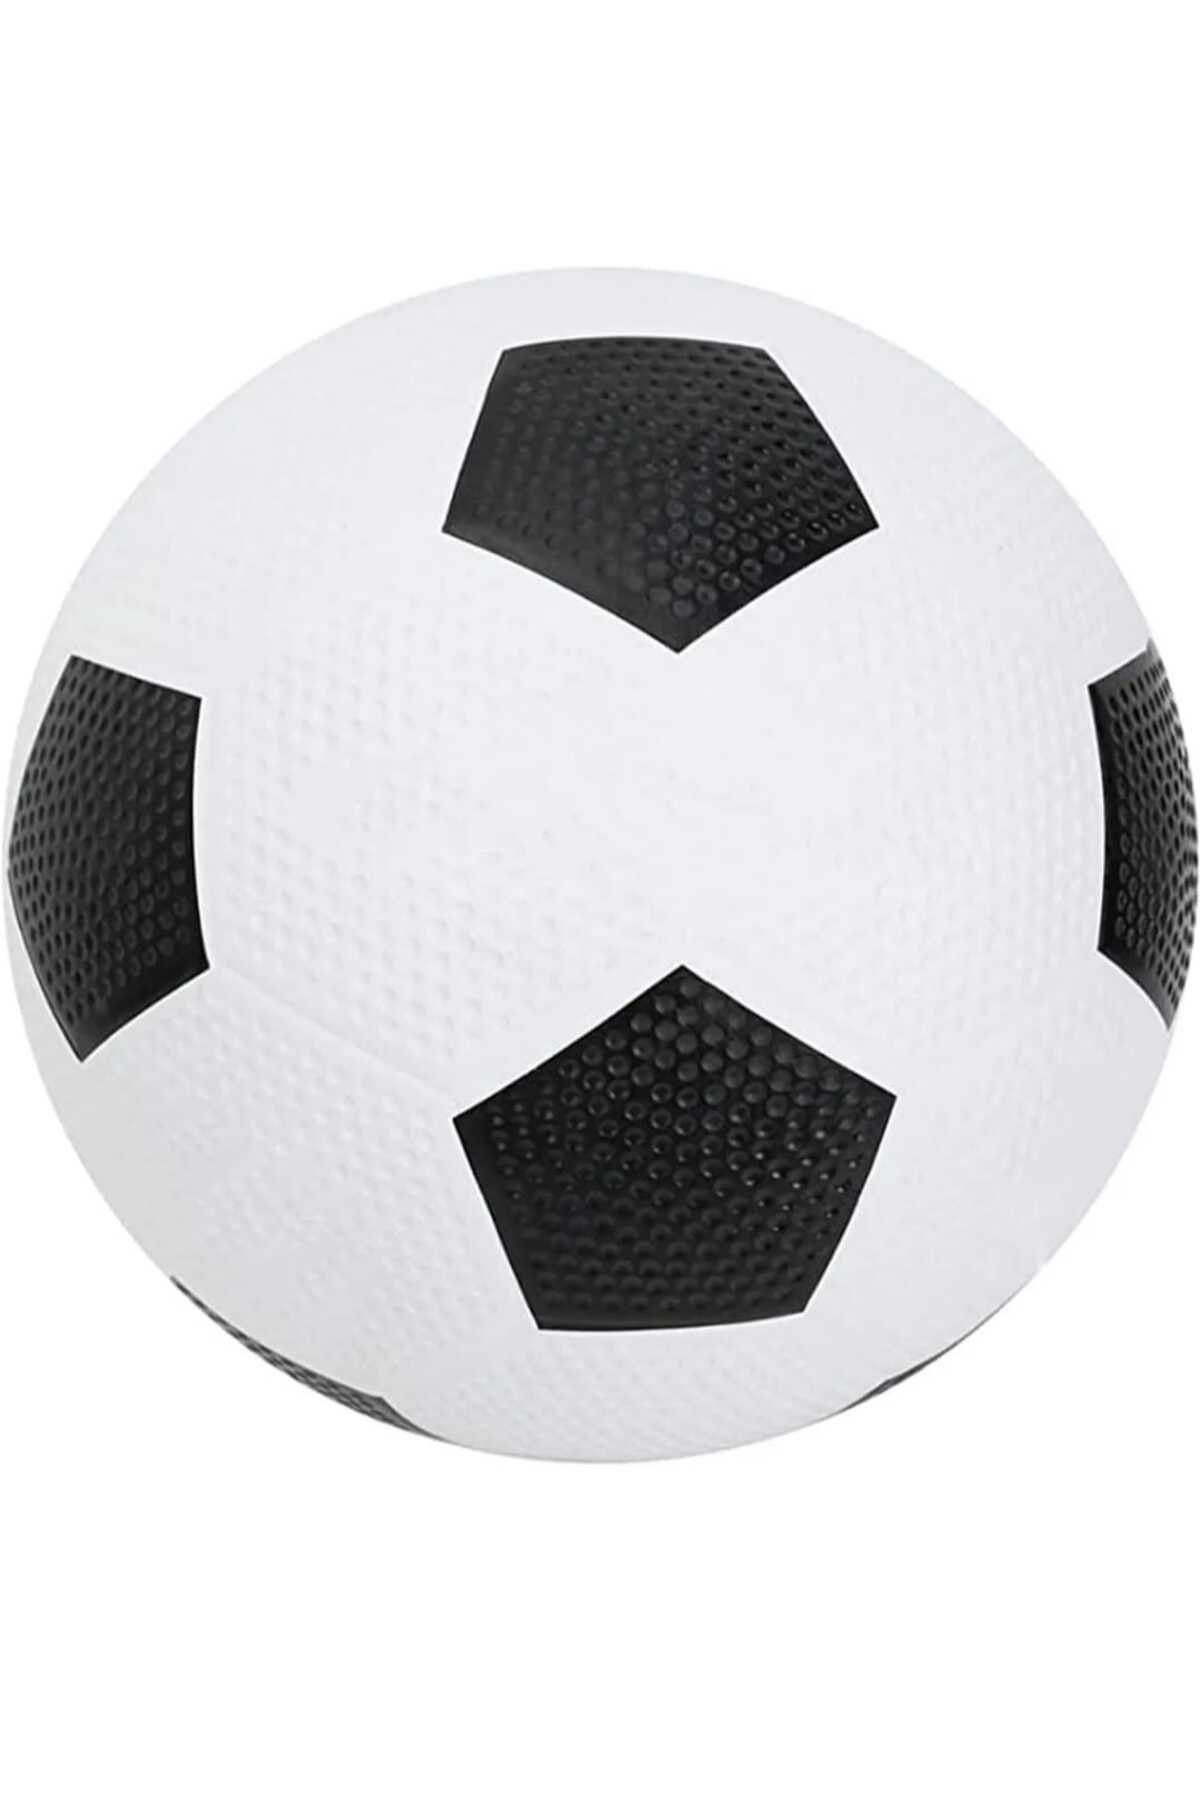 Hisar Kauçuk Futbol Topu Siyah Beyaz